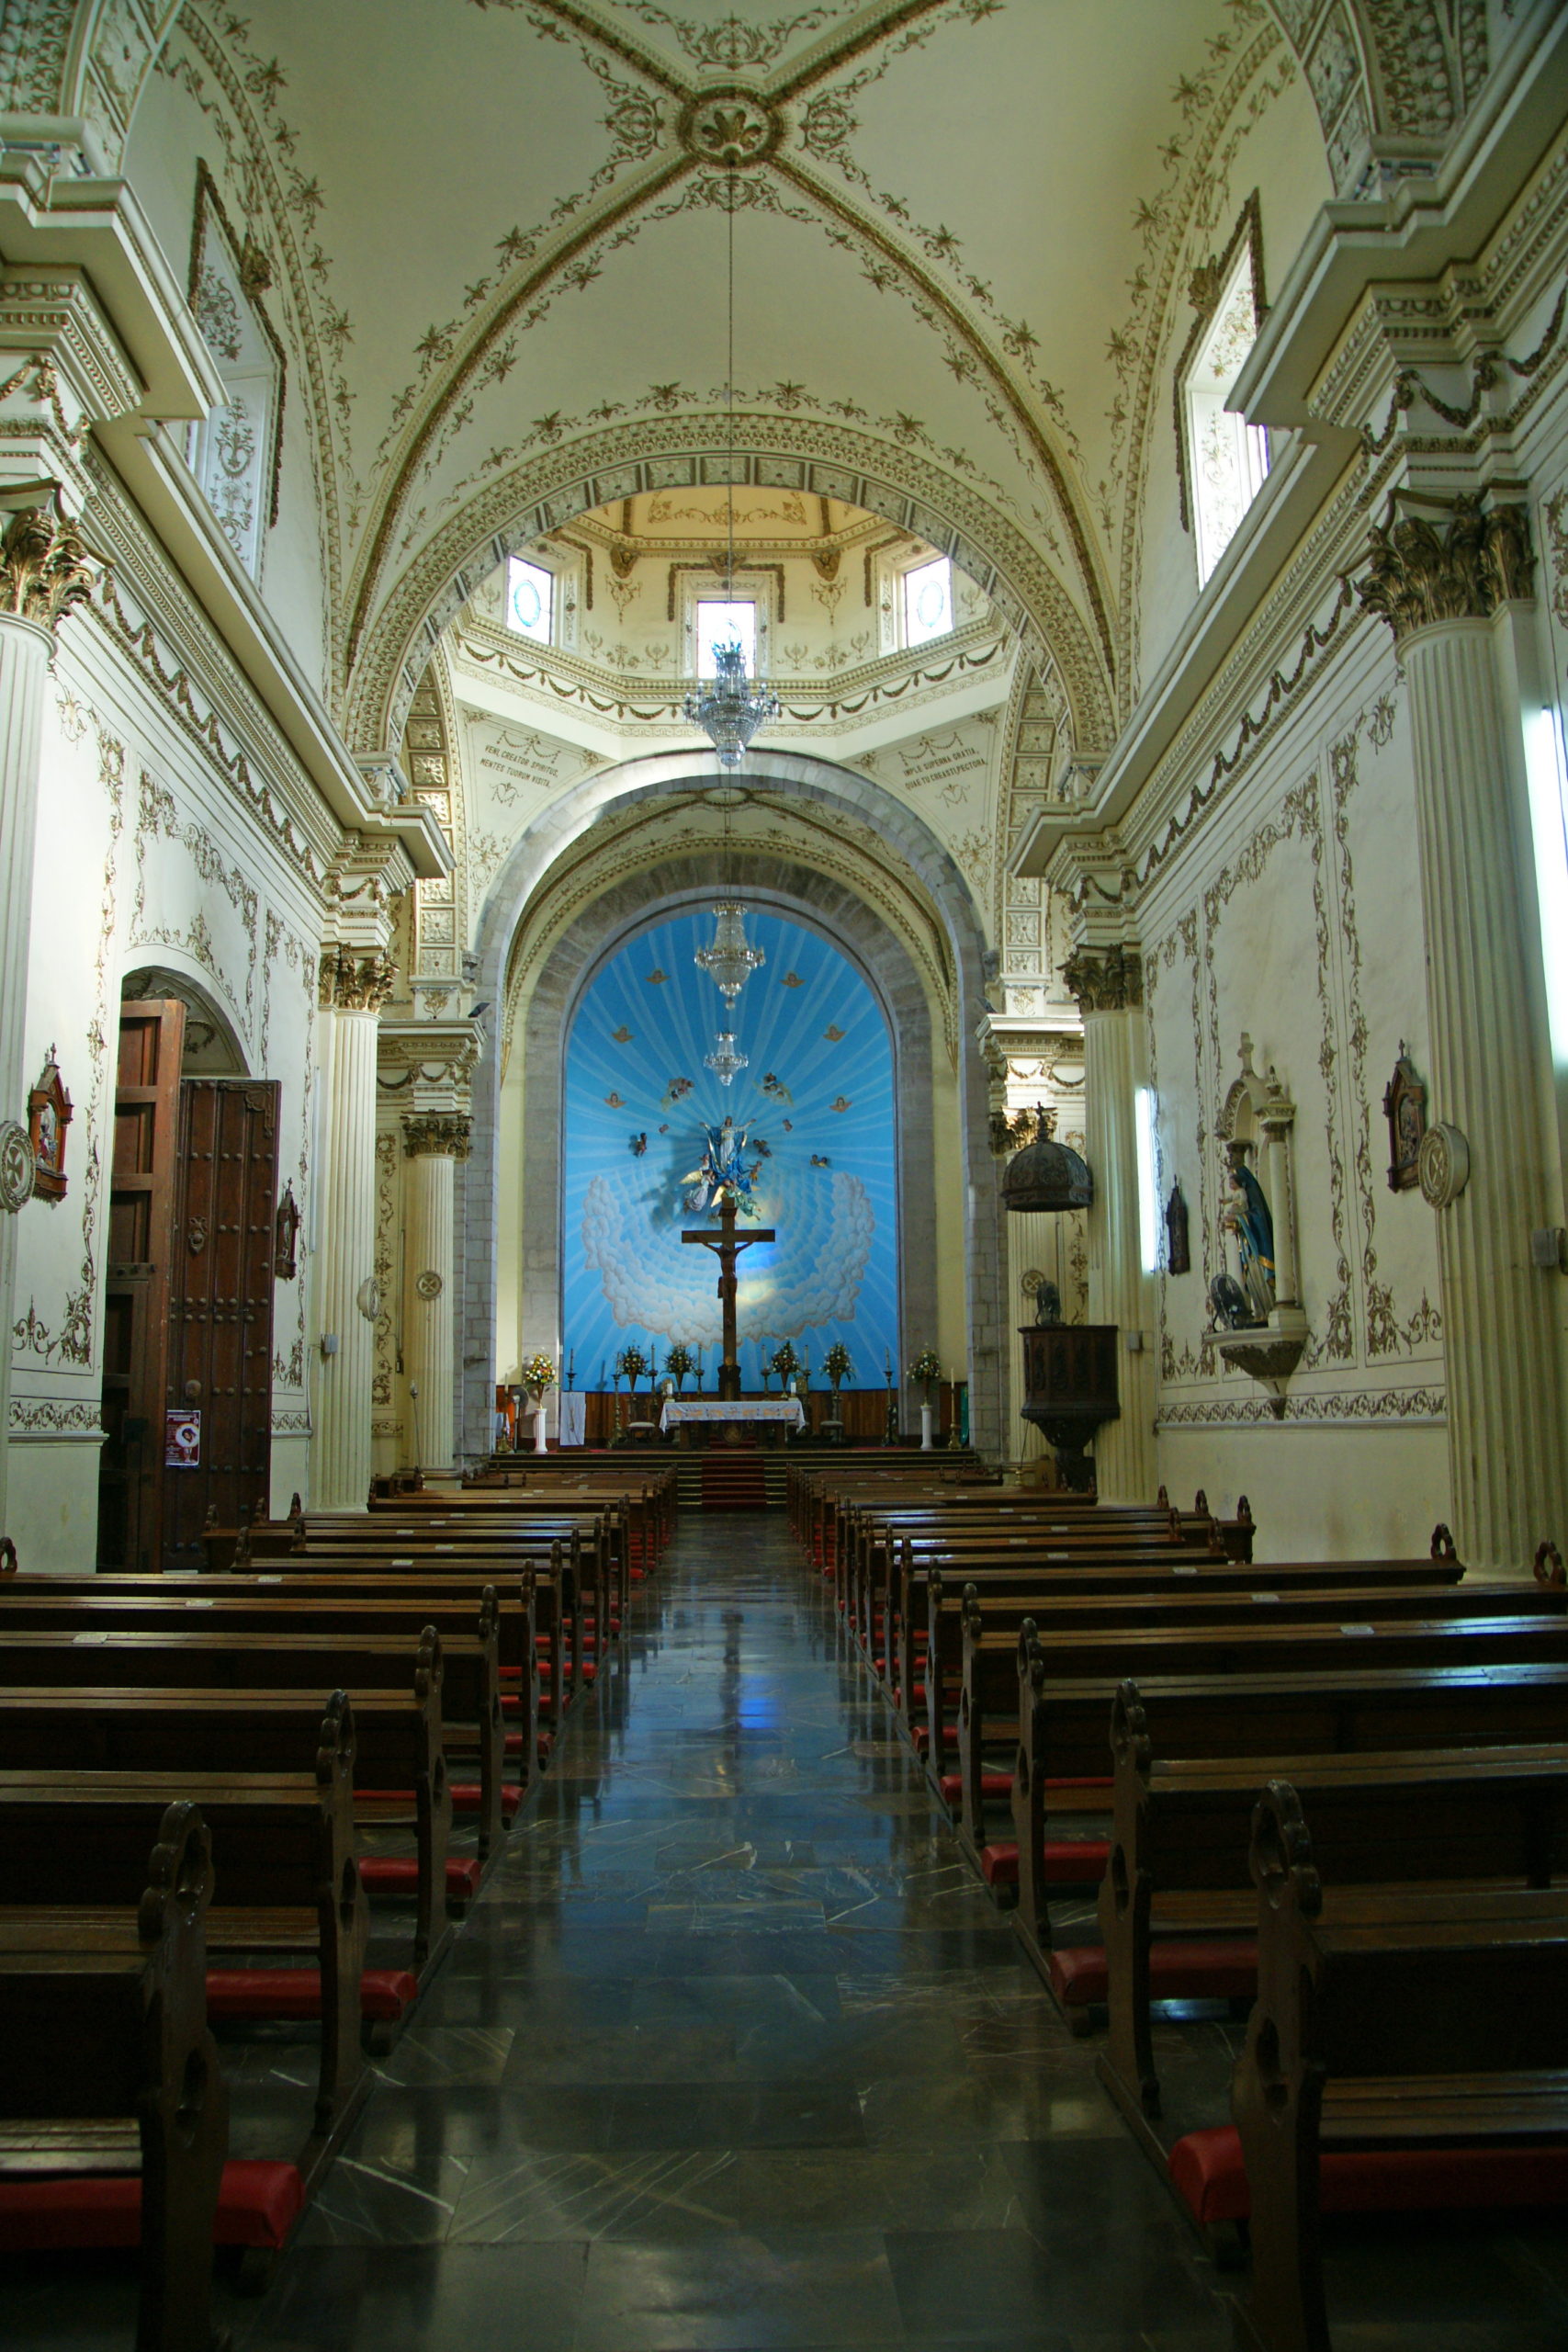 The central nave of the Catedral Basílica de la Inmaculada Concepción.